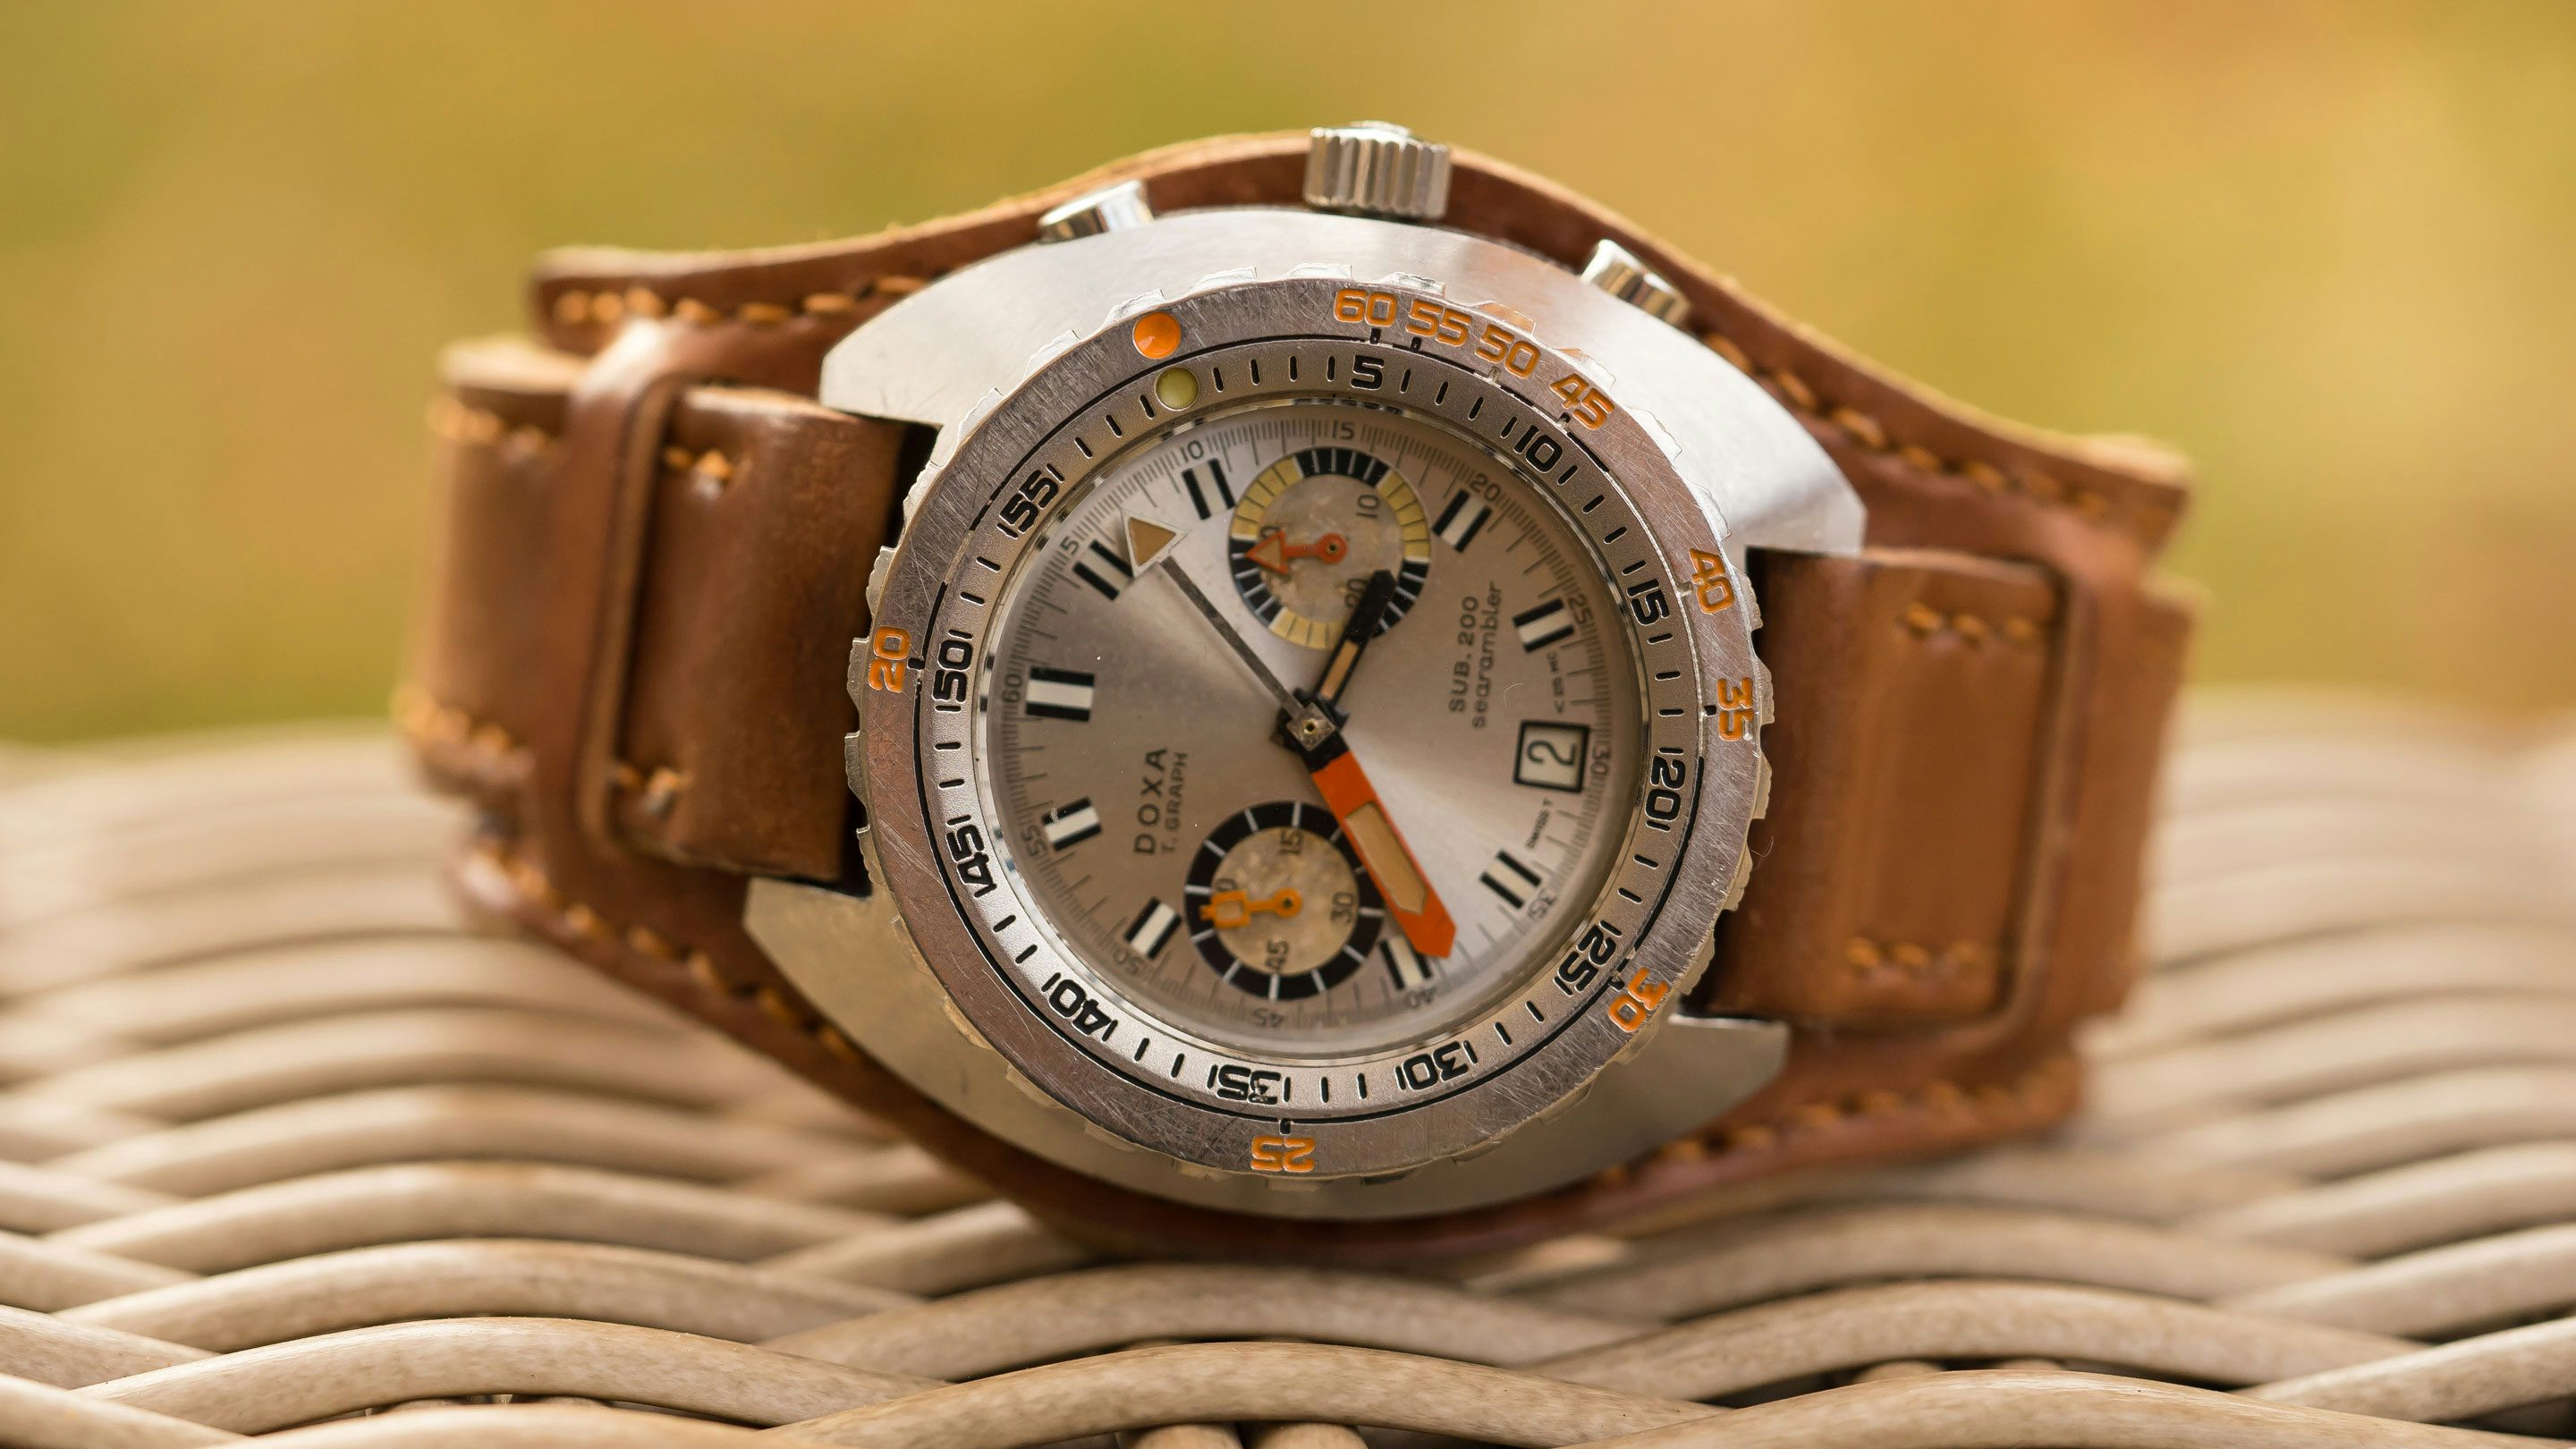 Bund-style Leather Watch Strap